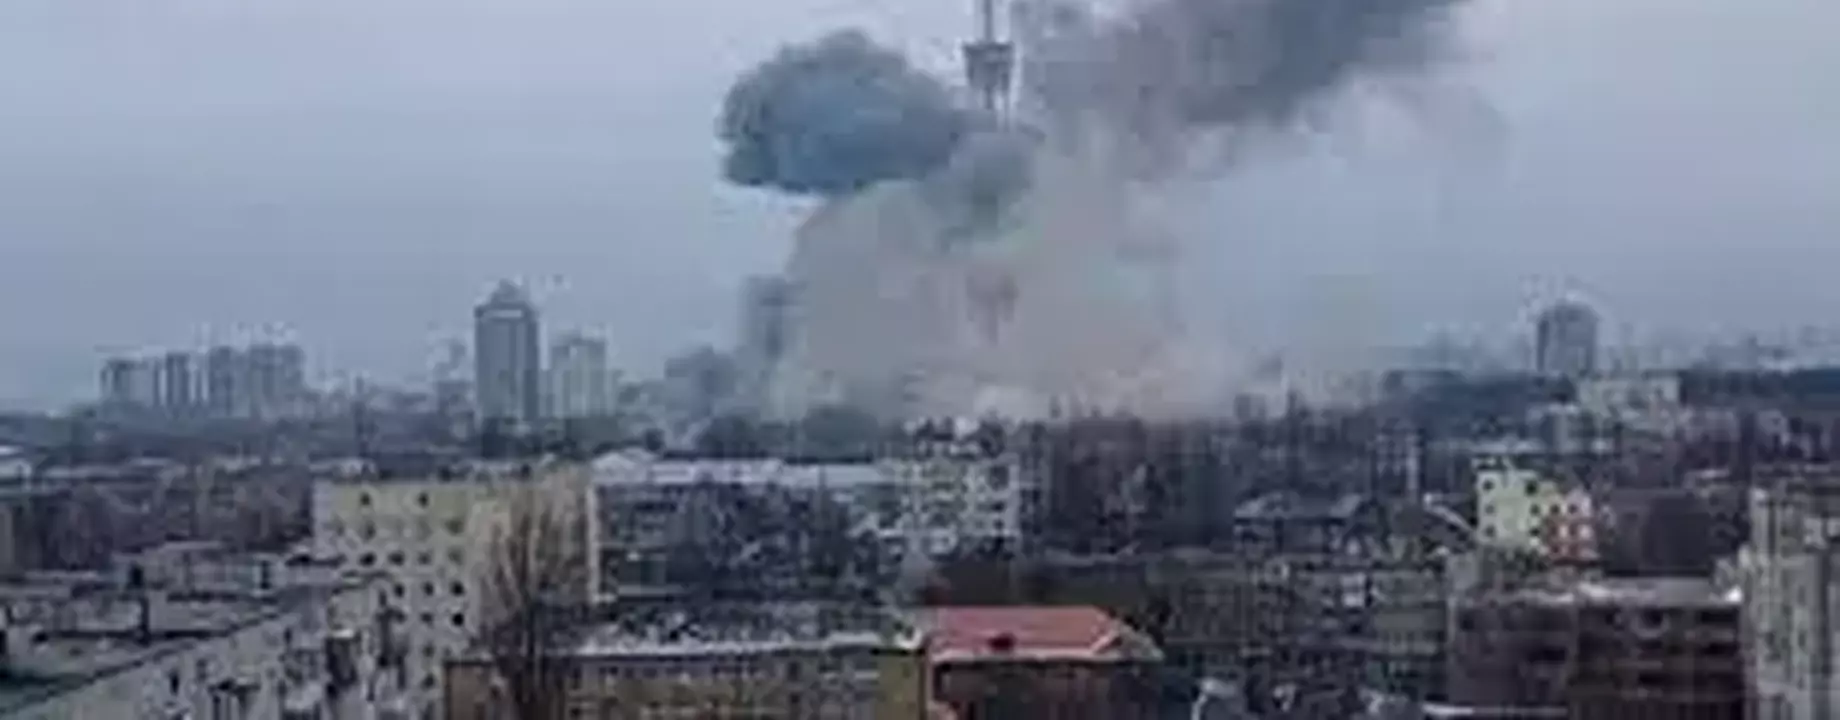 Kijev rakétatámadás